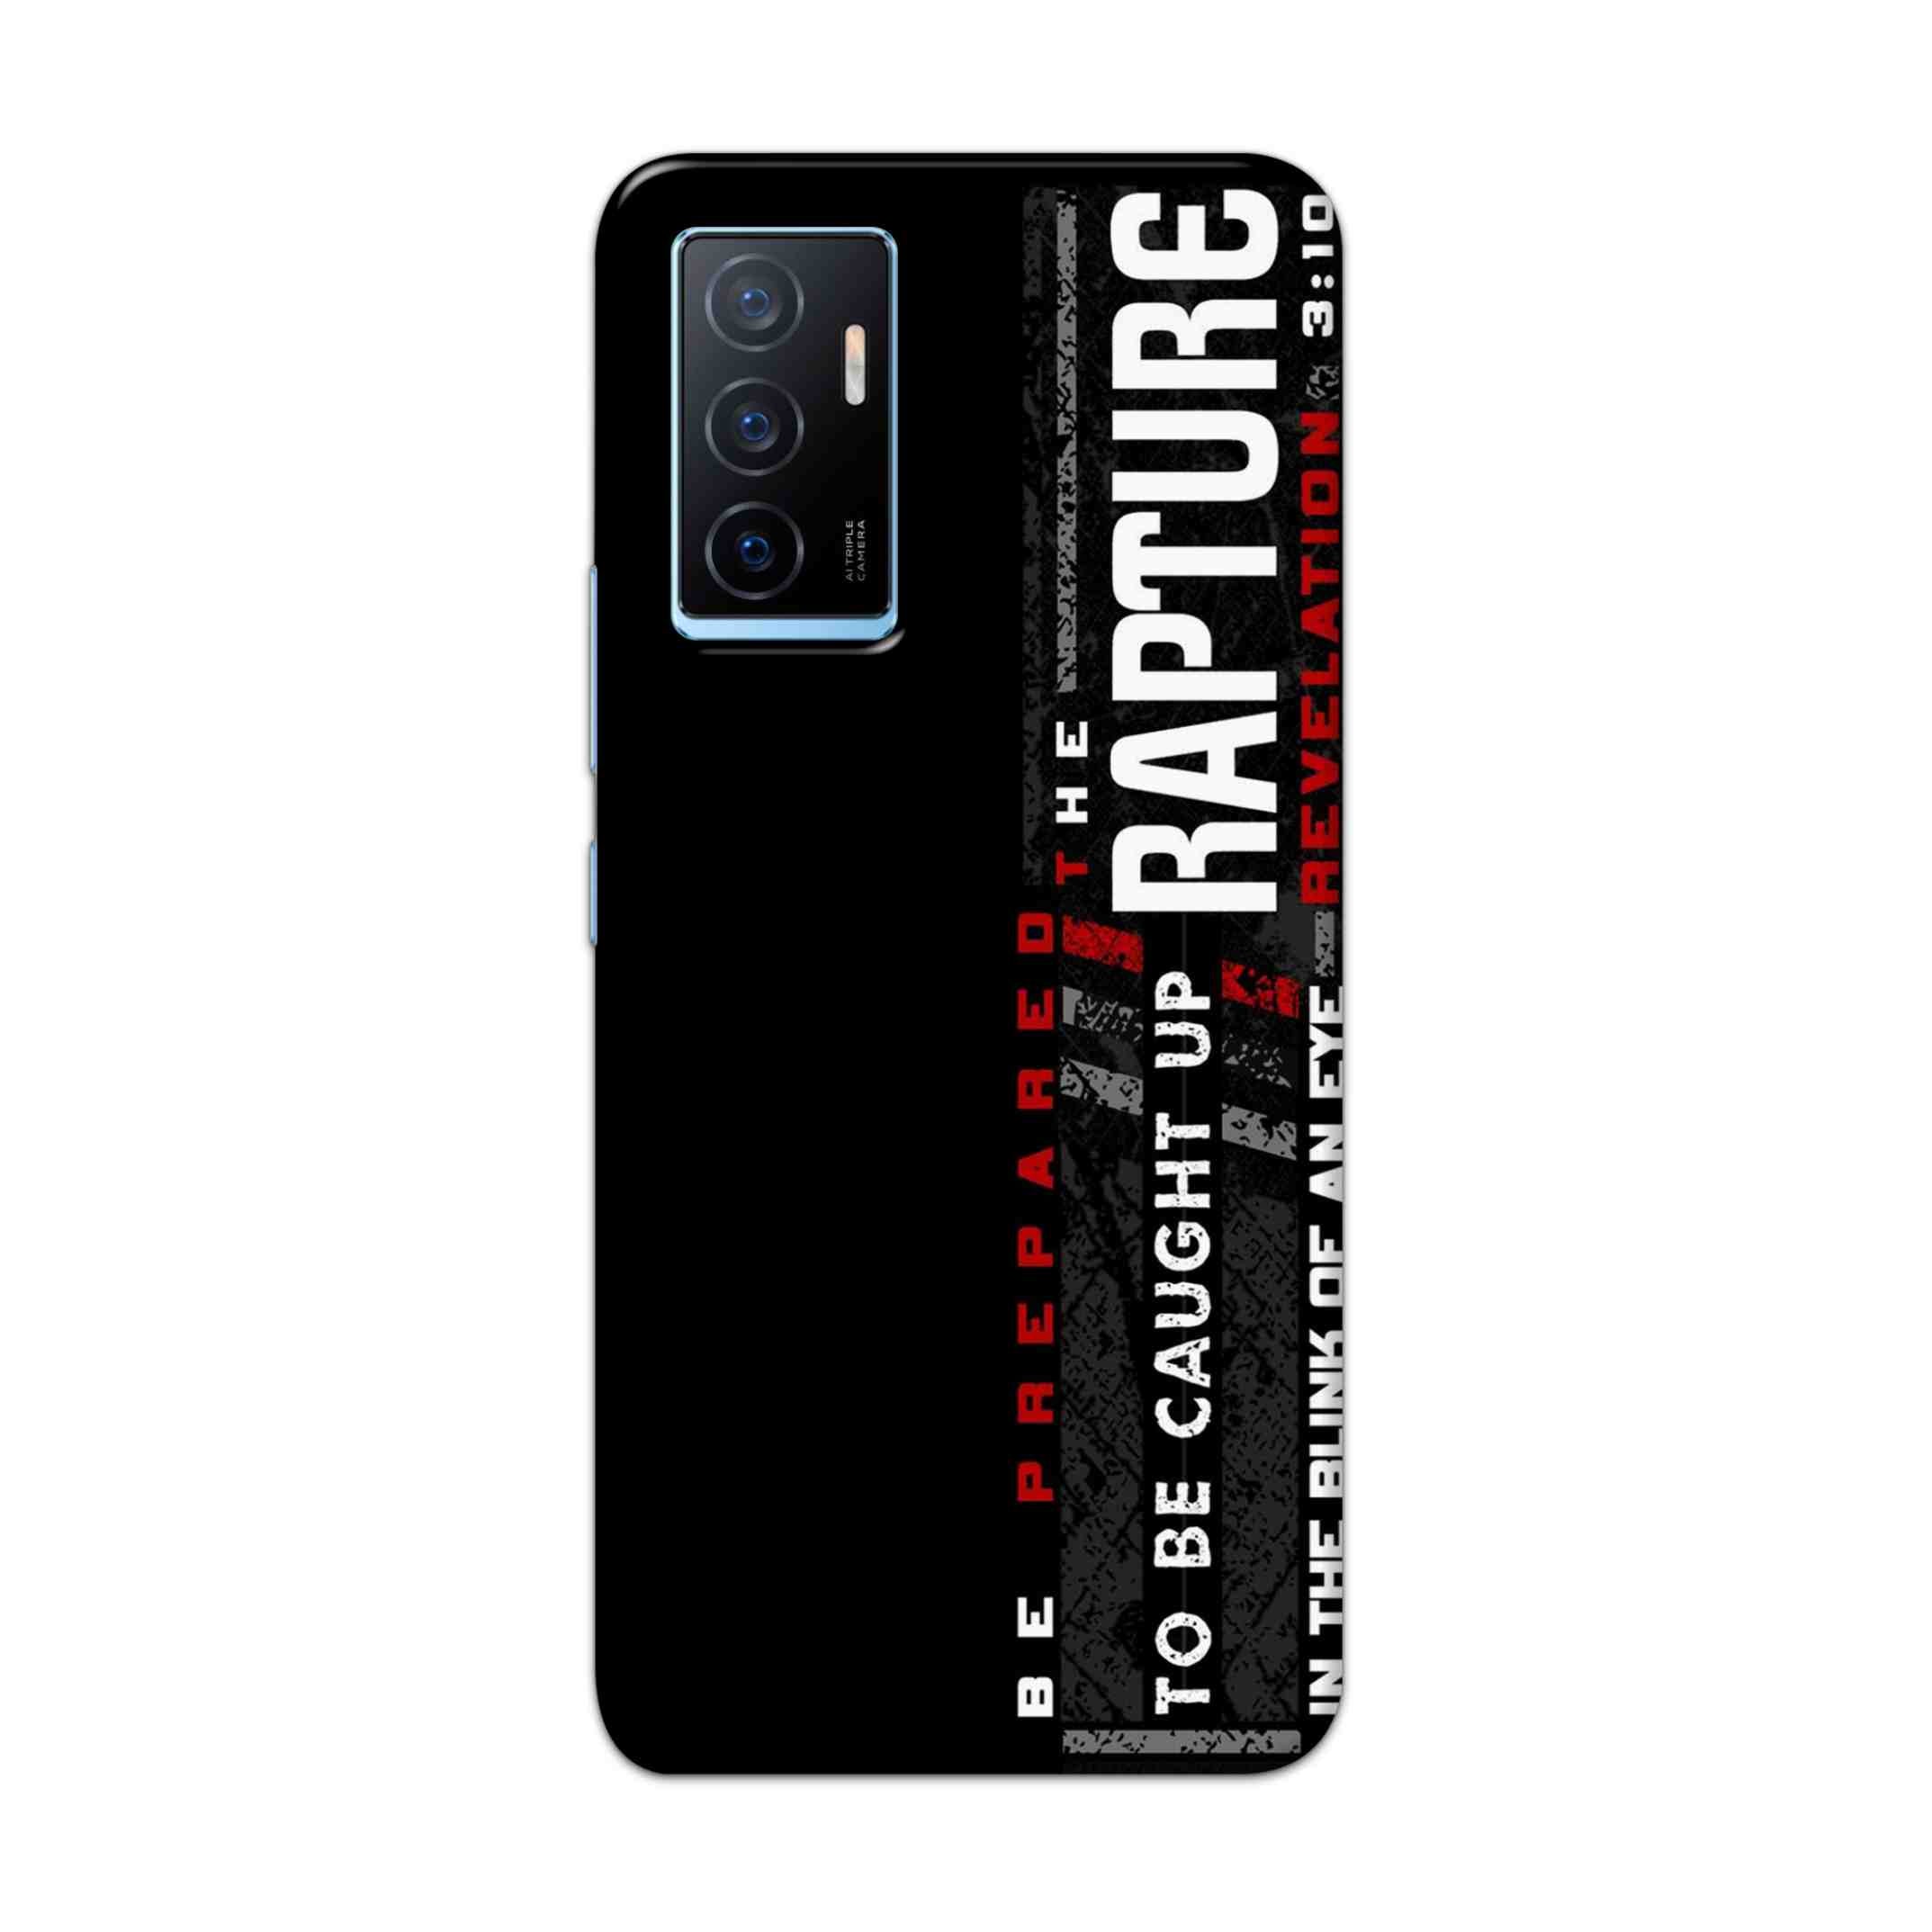 Buy Rapture Hard Back Mobile Phone Case Cover For Vivo Y75 4G Online